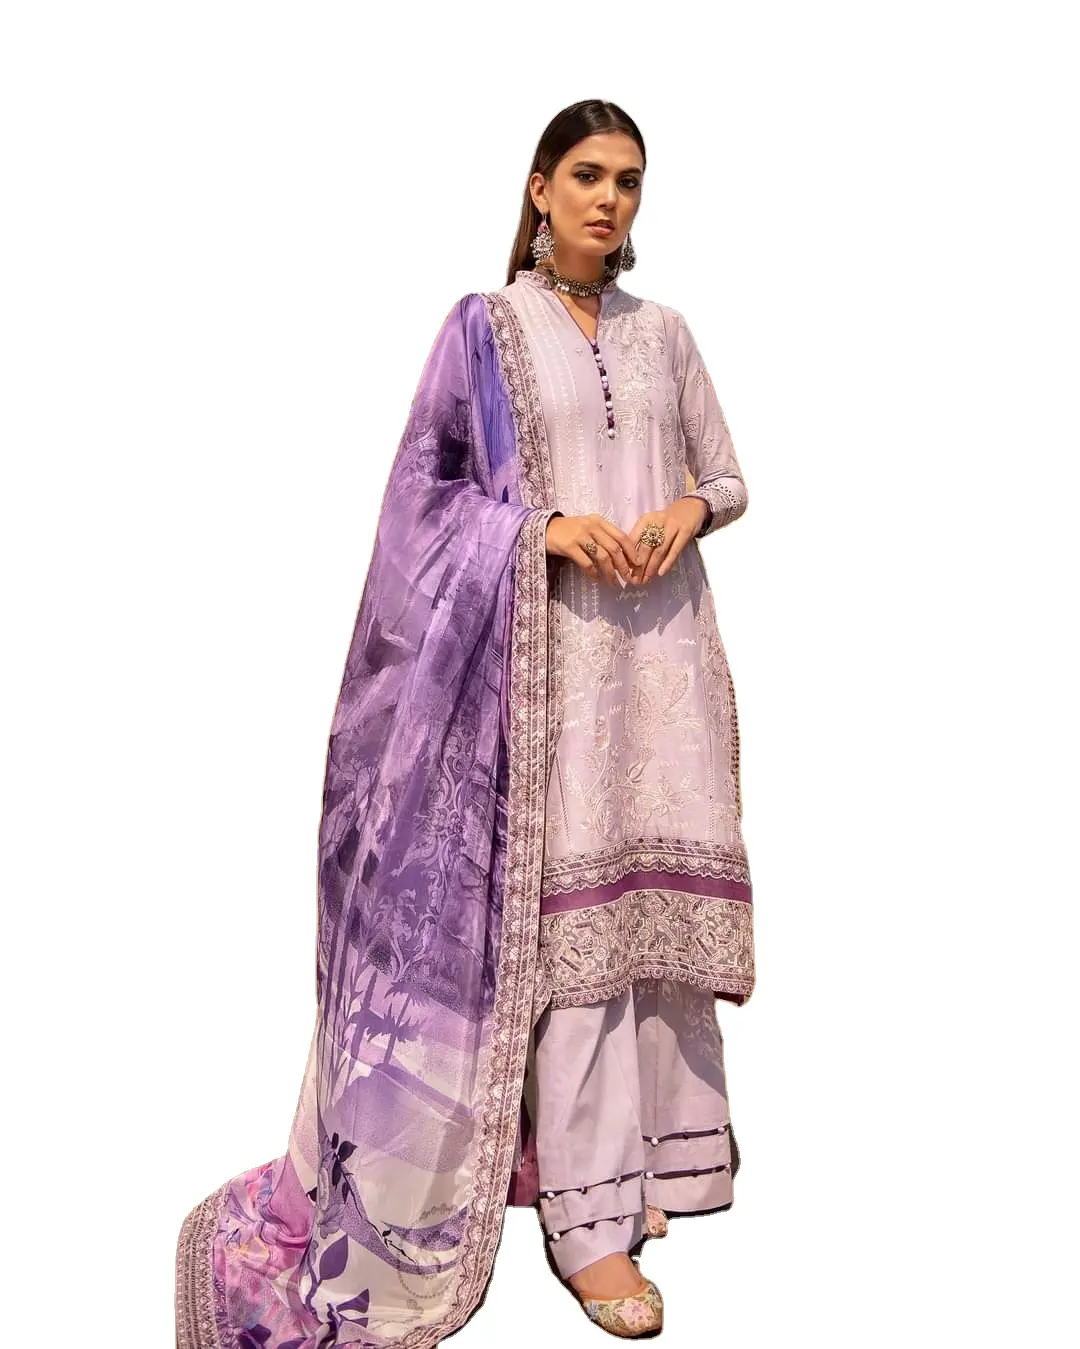 ملابس هندية وباكستان ساري بانجابي عرقية رائجة البيع 2022 موديل بدلة حديقة جميلة جداً براقة وجيدة المظهر لينجها 150